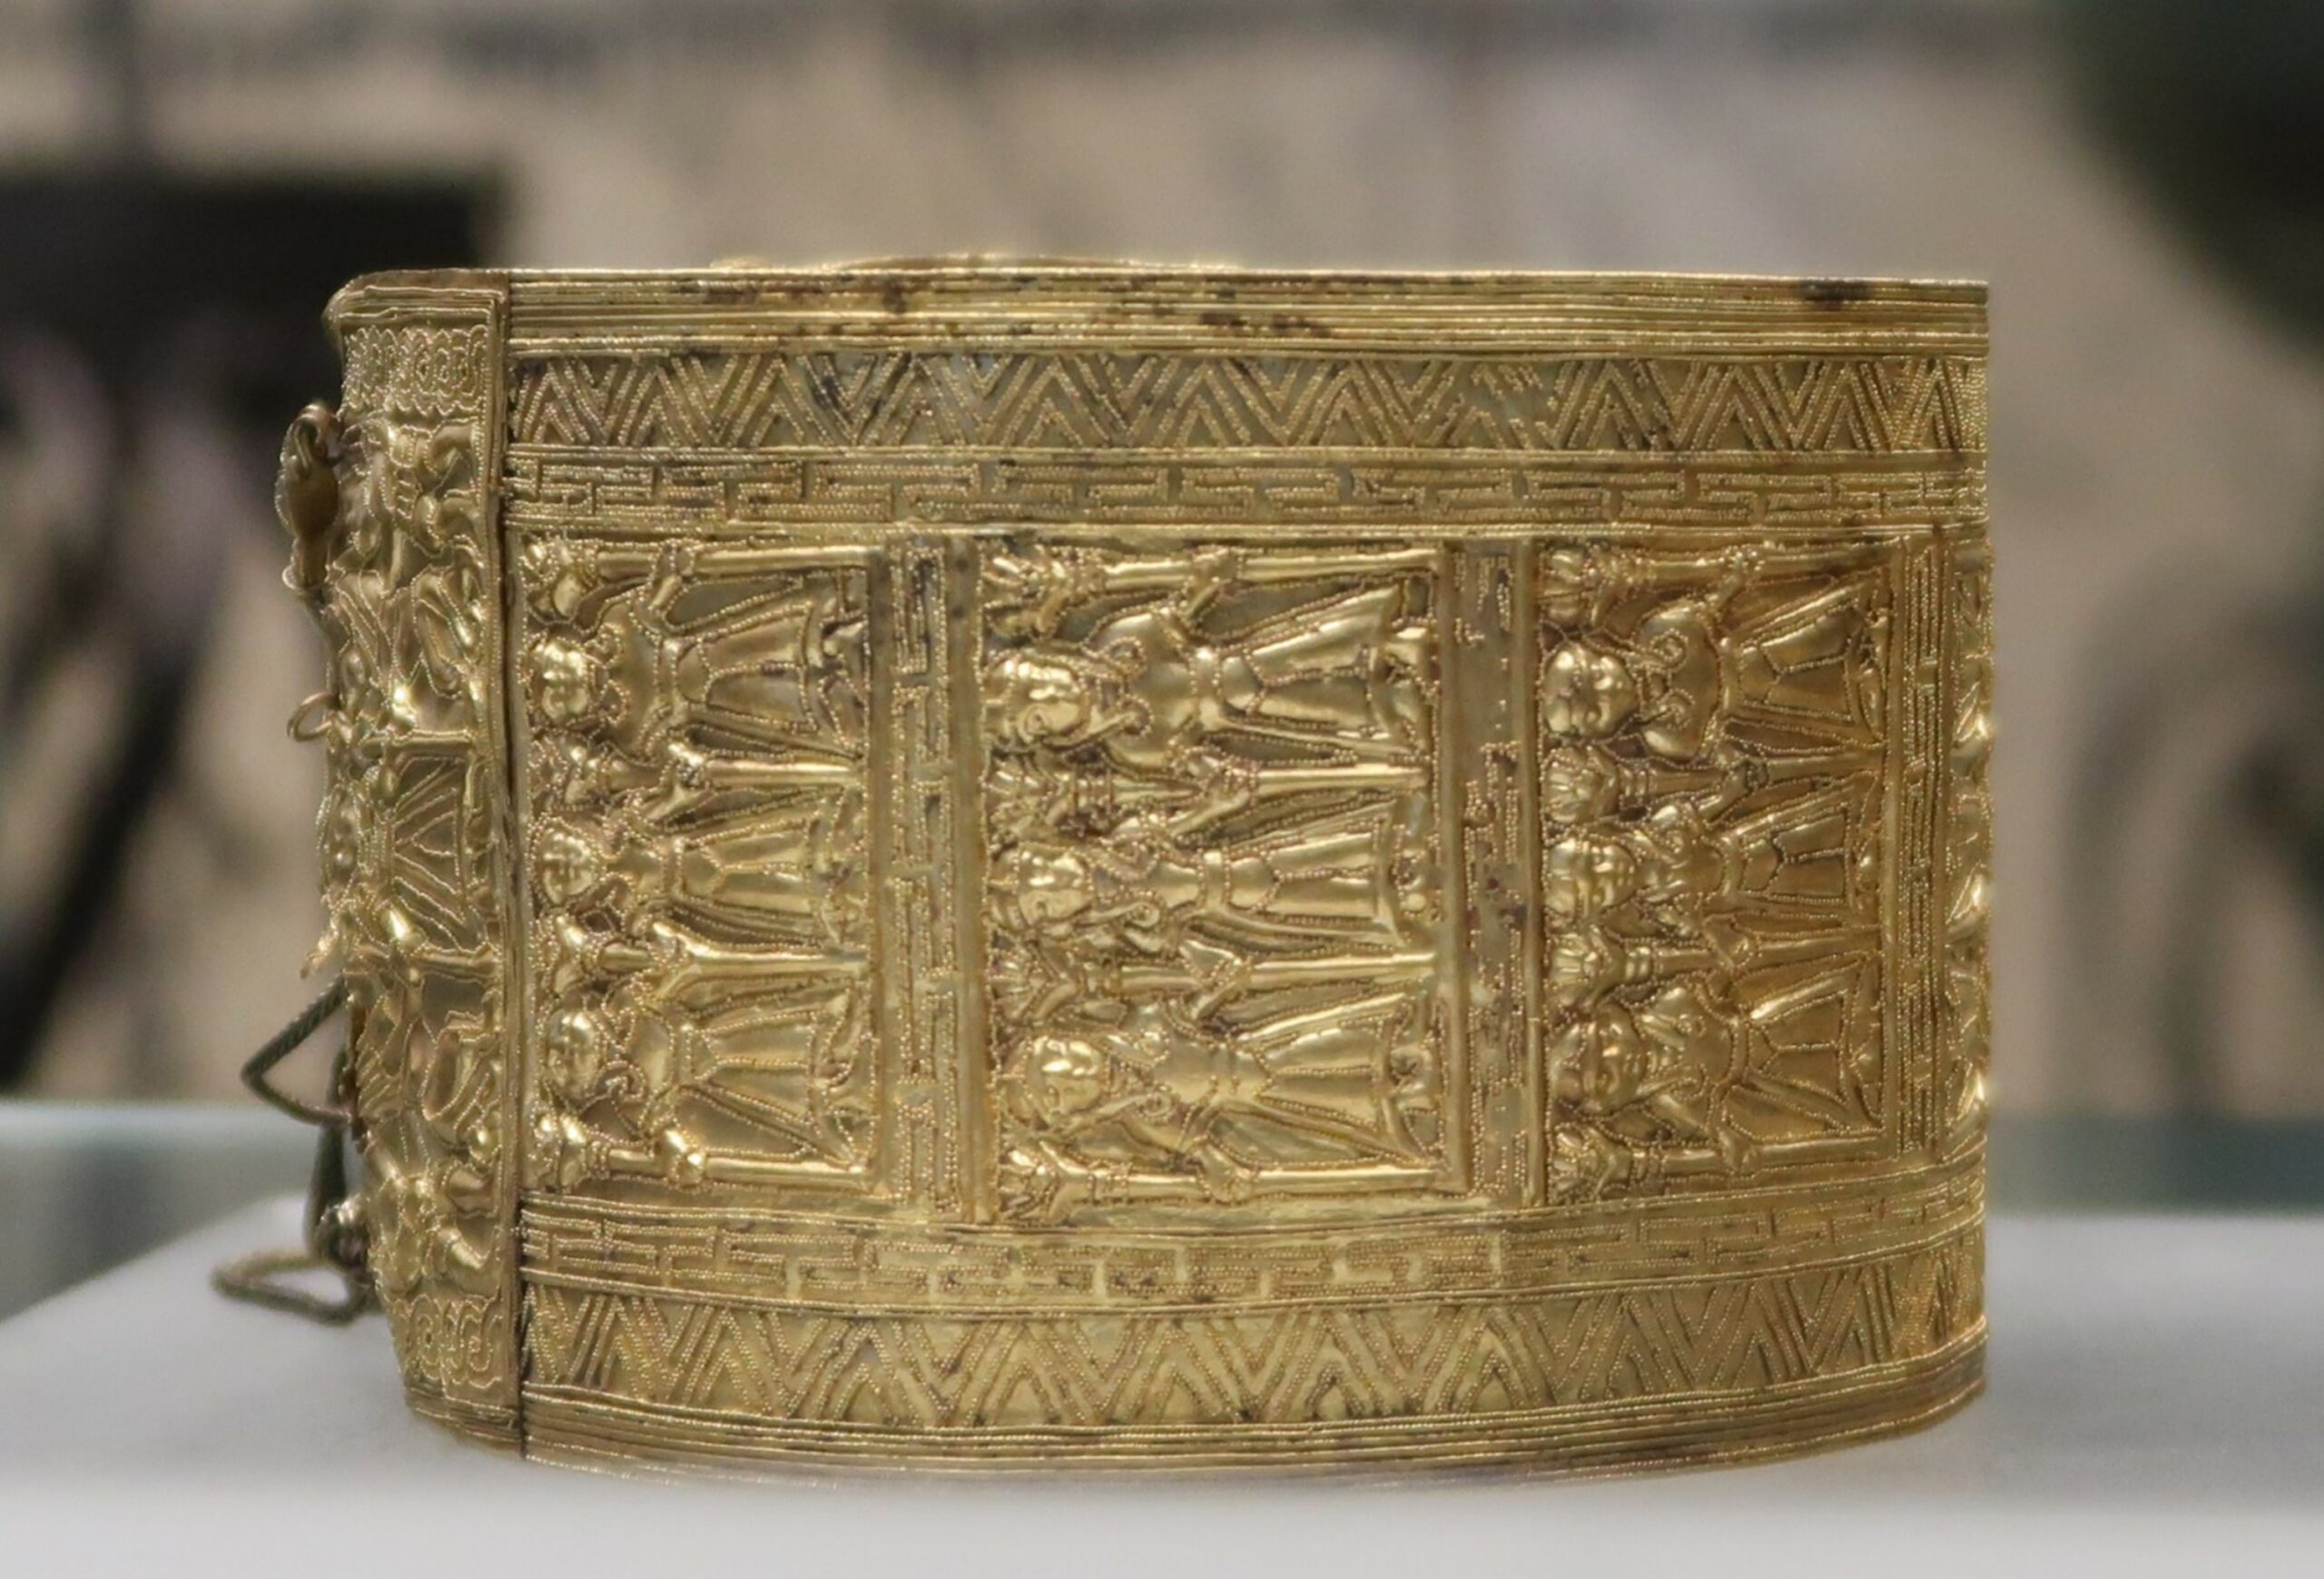 Bracelet en or. Or poli et fondu, décoré en repoussé et granulation long. cm 26 ; larg. cm 6,7/6,9 ; diam. cm 9,3/10